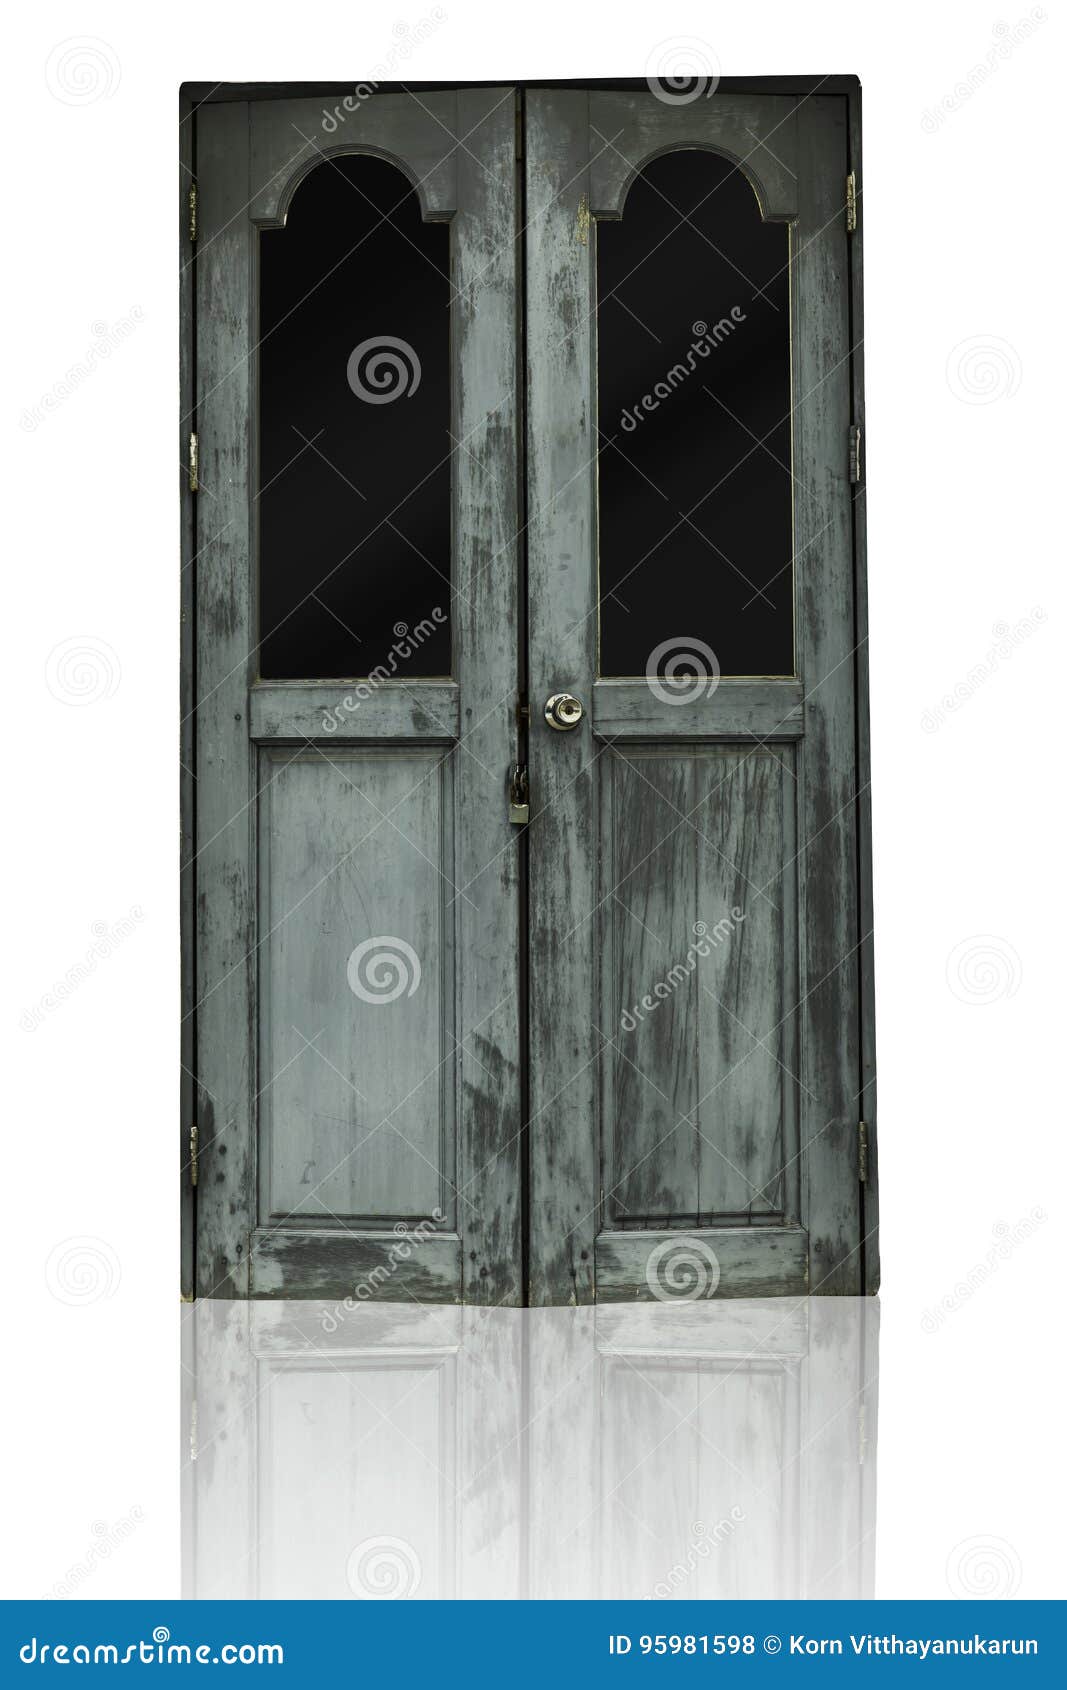 Haunted House Door